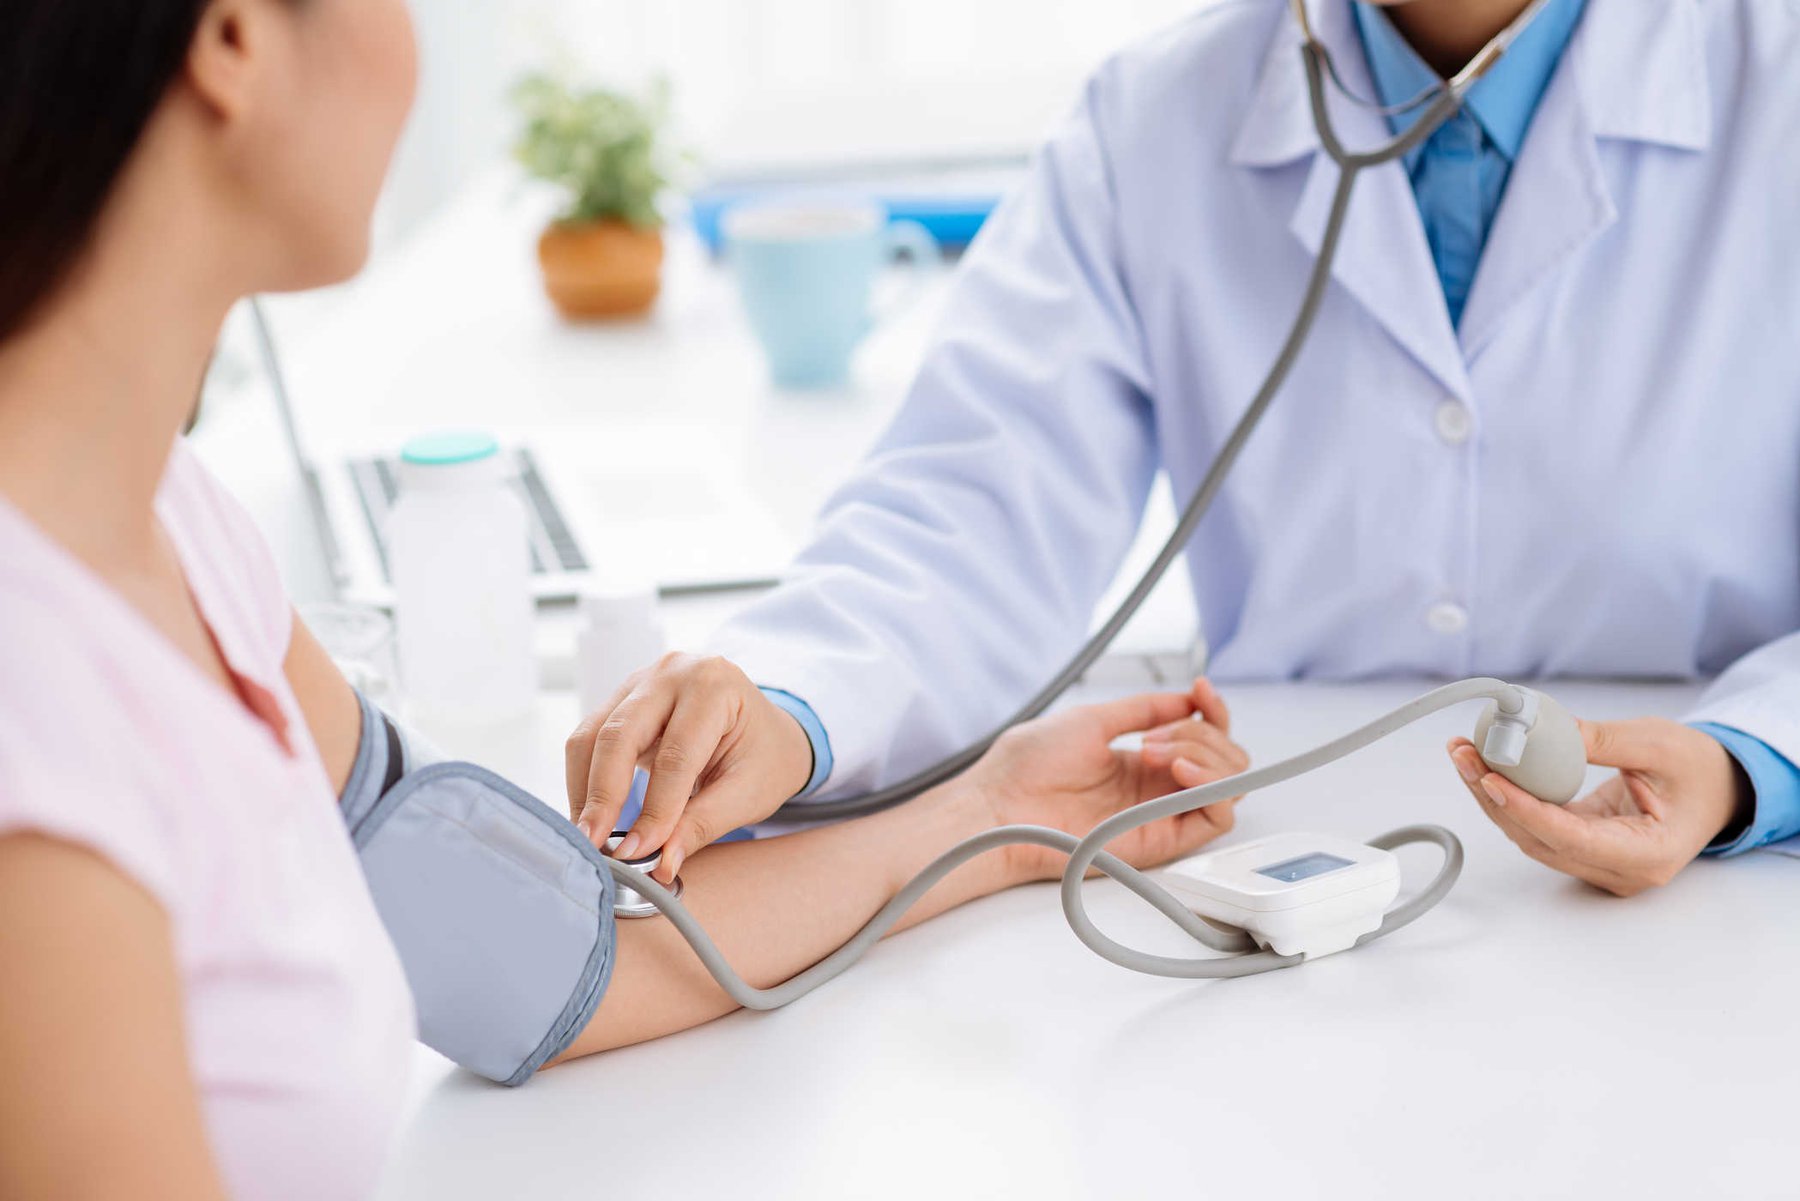   Ở tuổi 30, phụ nữ nên kiểm tra huyết áp định kỳ  